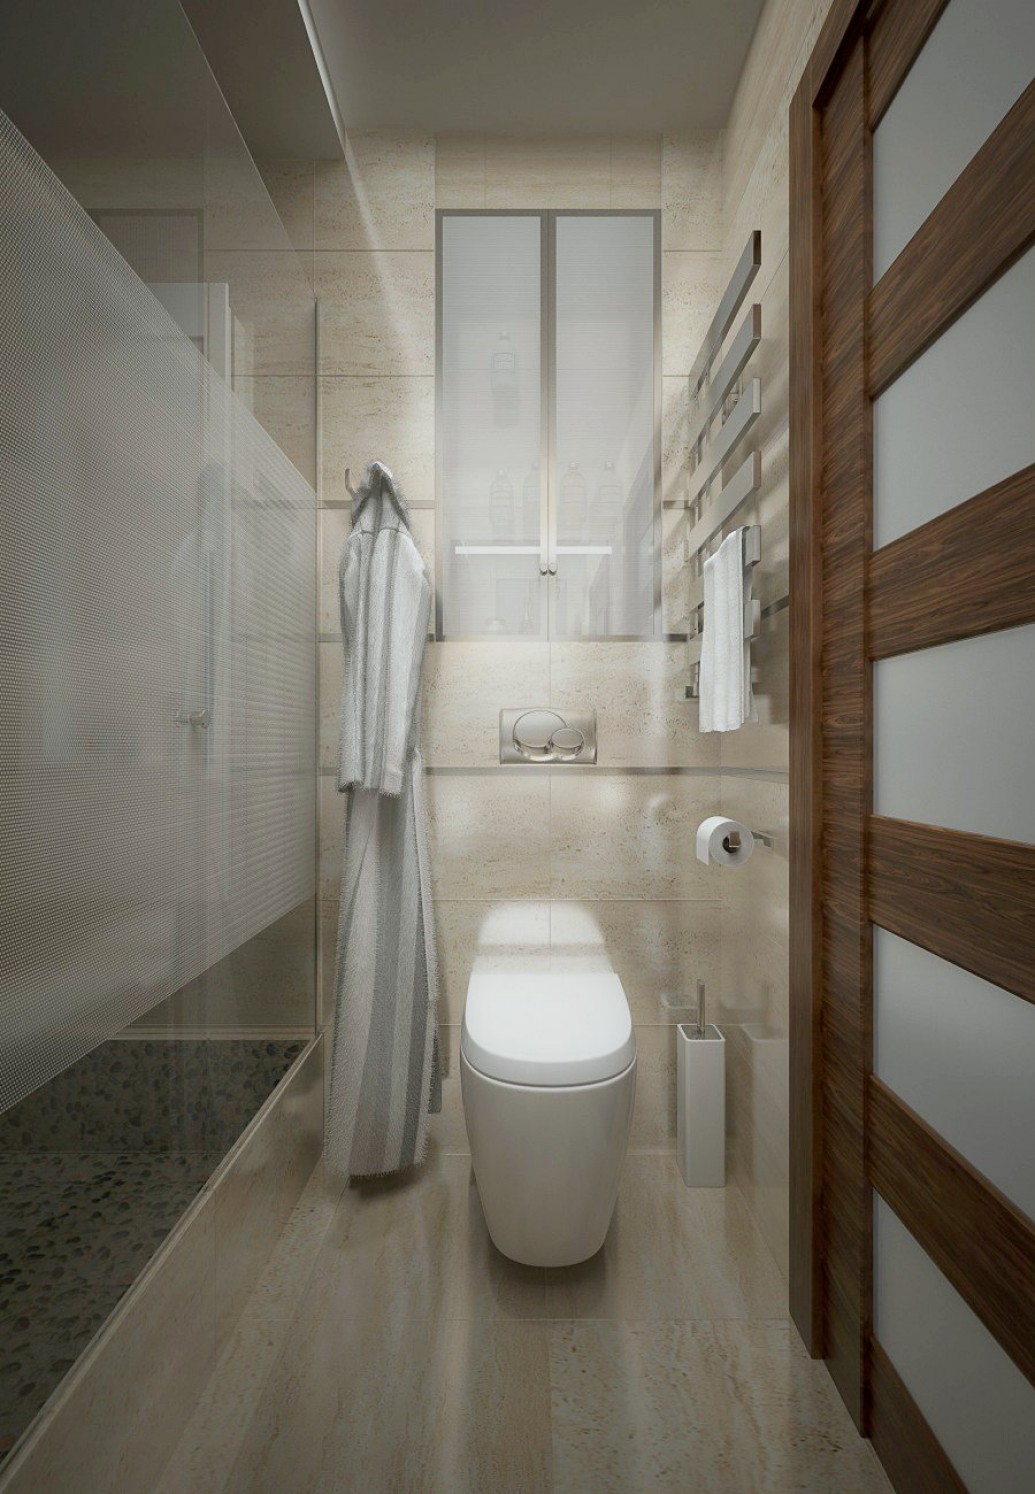   Узкая ванная дизайн современный стиль